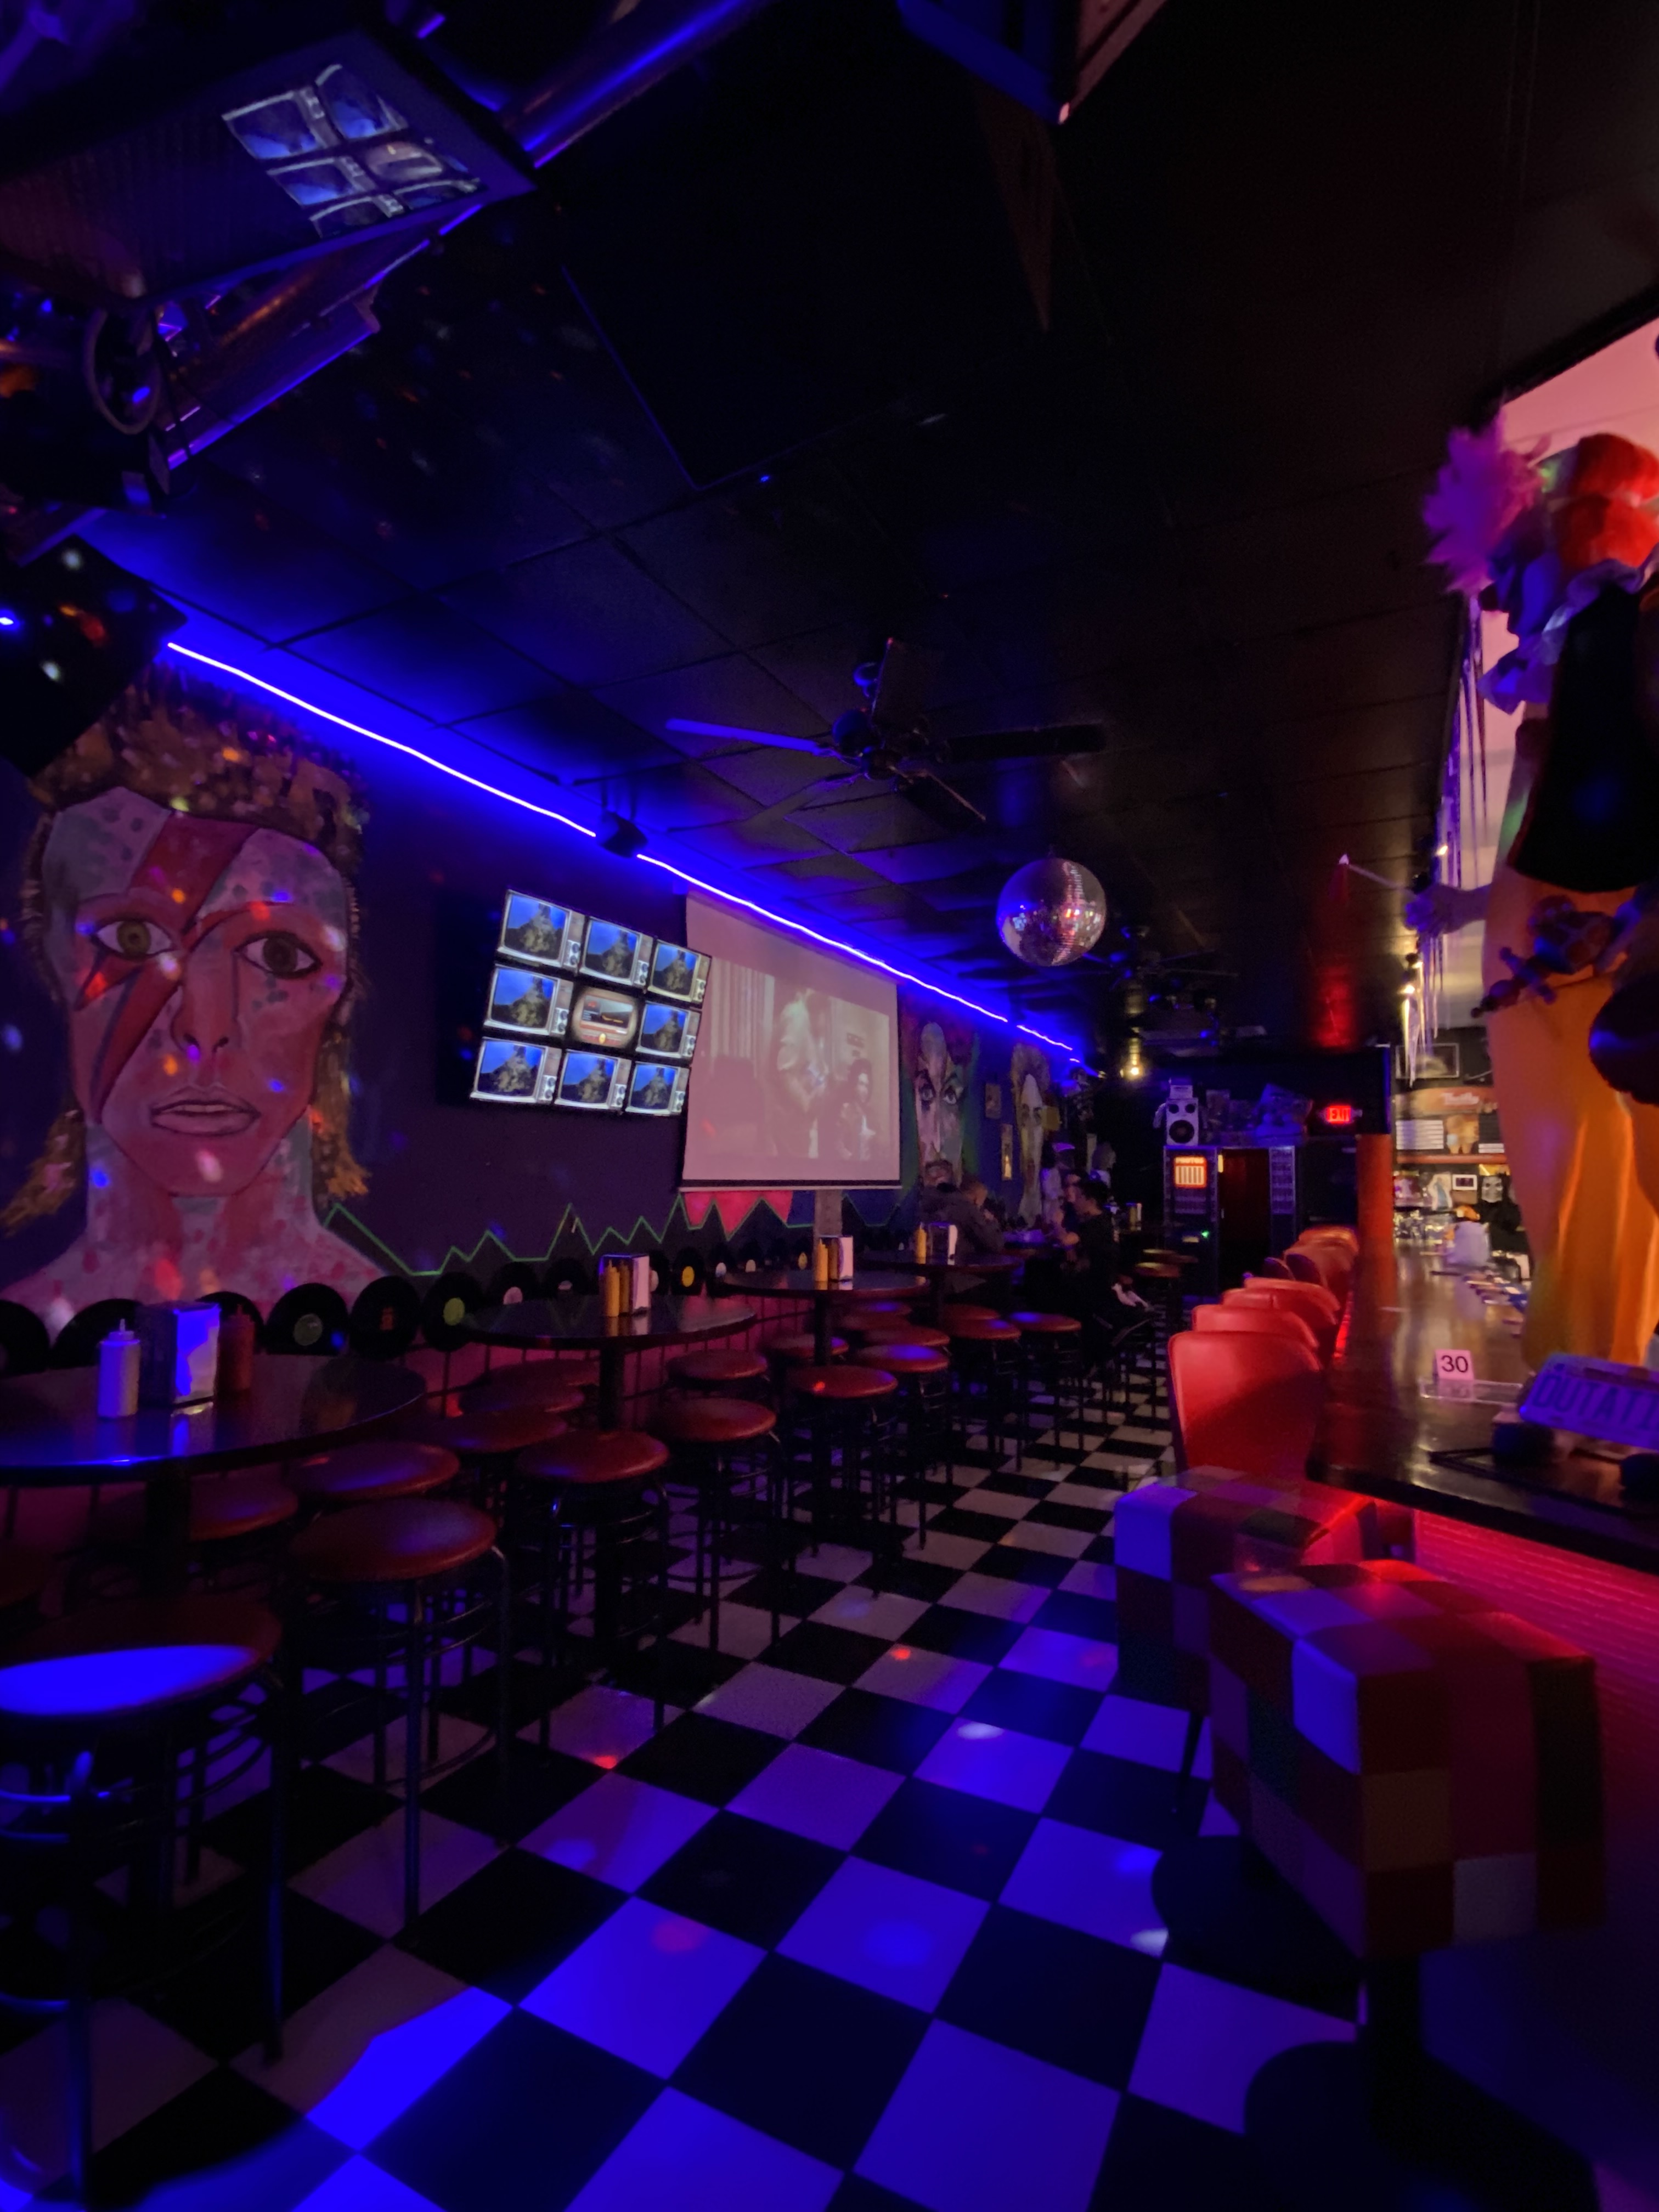 回到80年代的Cafe and More酒吧——黑光灯，大卫·鲍伊的壁画，黑白格子地板